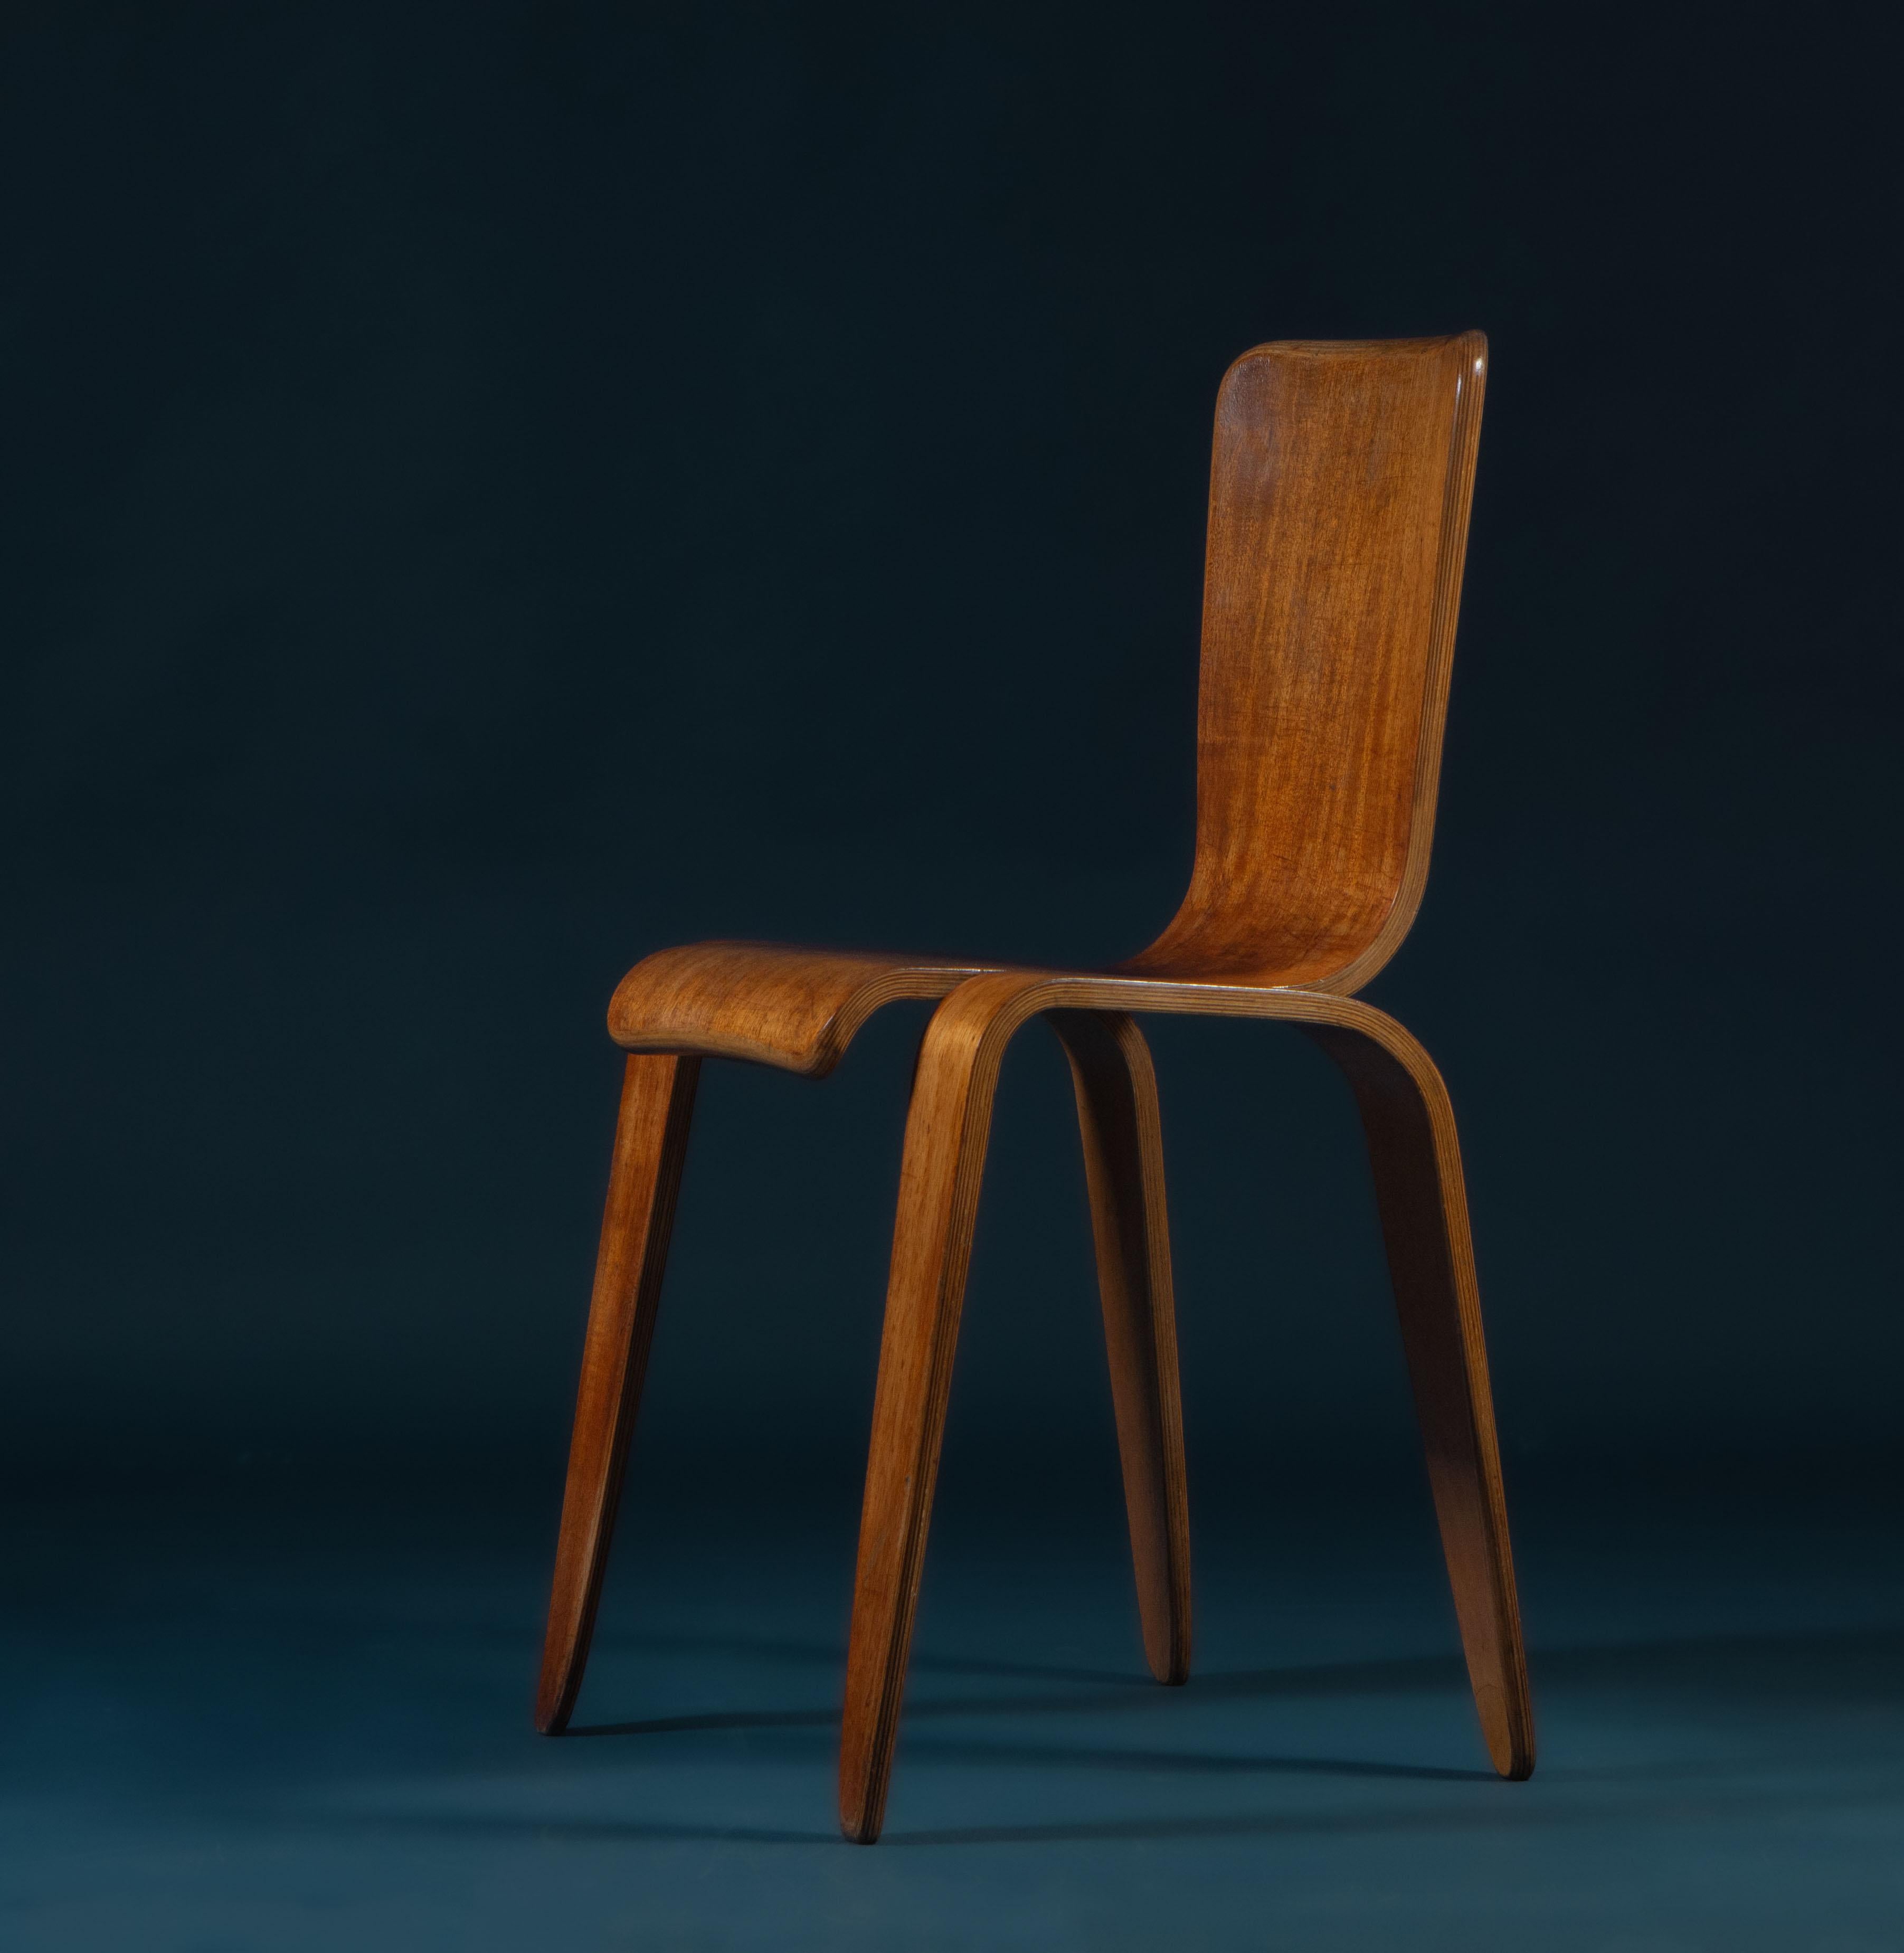 Seltener Bambi Stuhl aus bentply, entworfen von Han Pieck (1924 - 2010) für Morris & Co in Glasgow. Ca. 1946.

Dieser schöne Stuhl wurde in einer sehr begrenzten Auflage von nur 200 Stück hergestellt. Hergestellt aus Sperrholzschichten, die zu einem